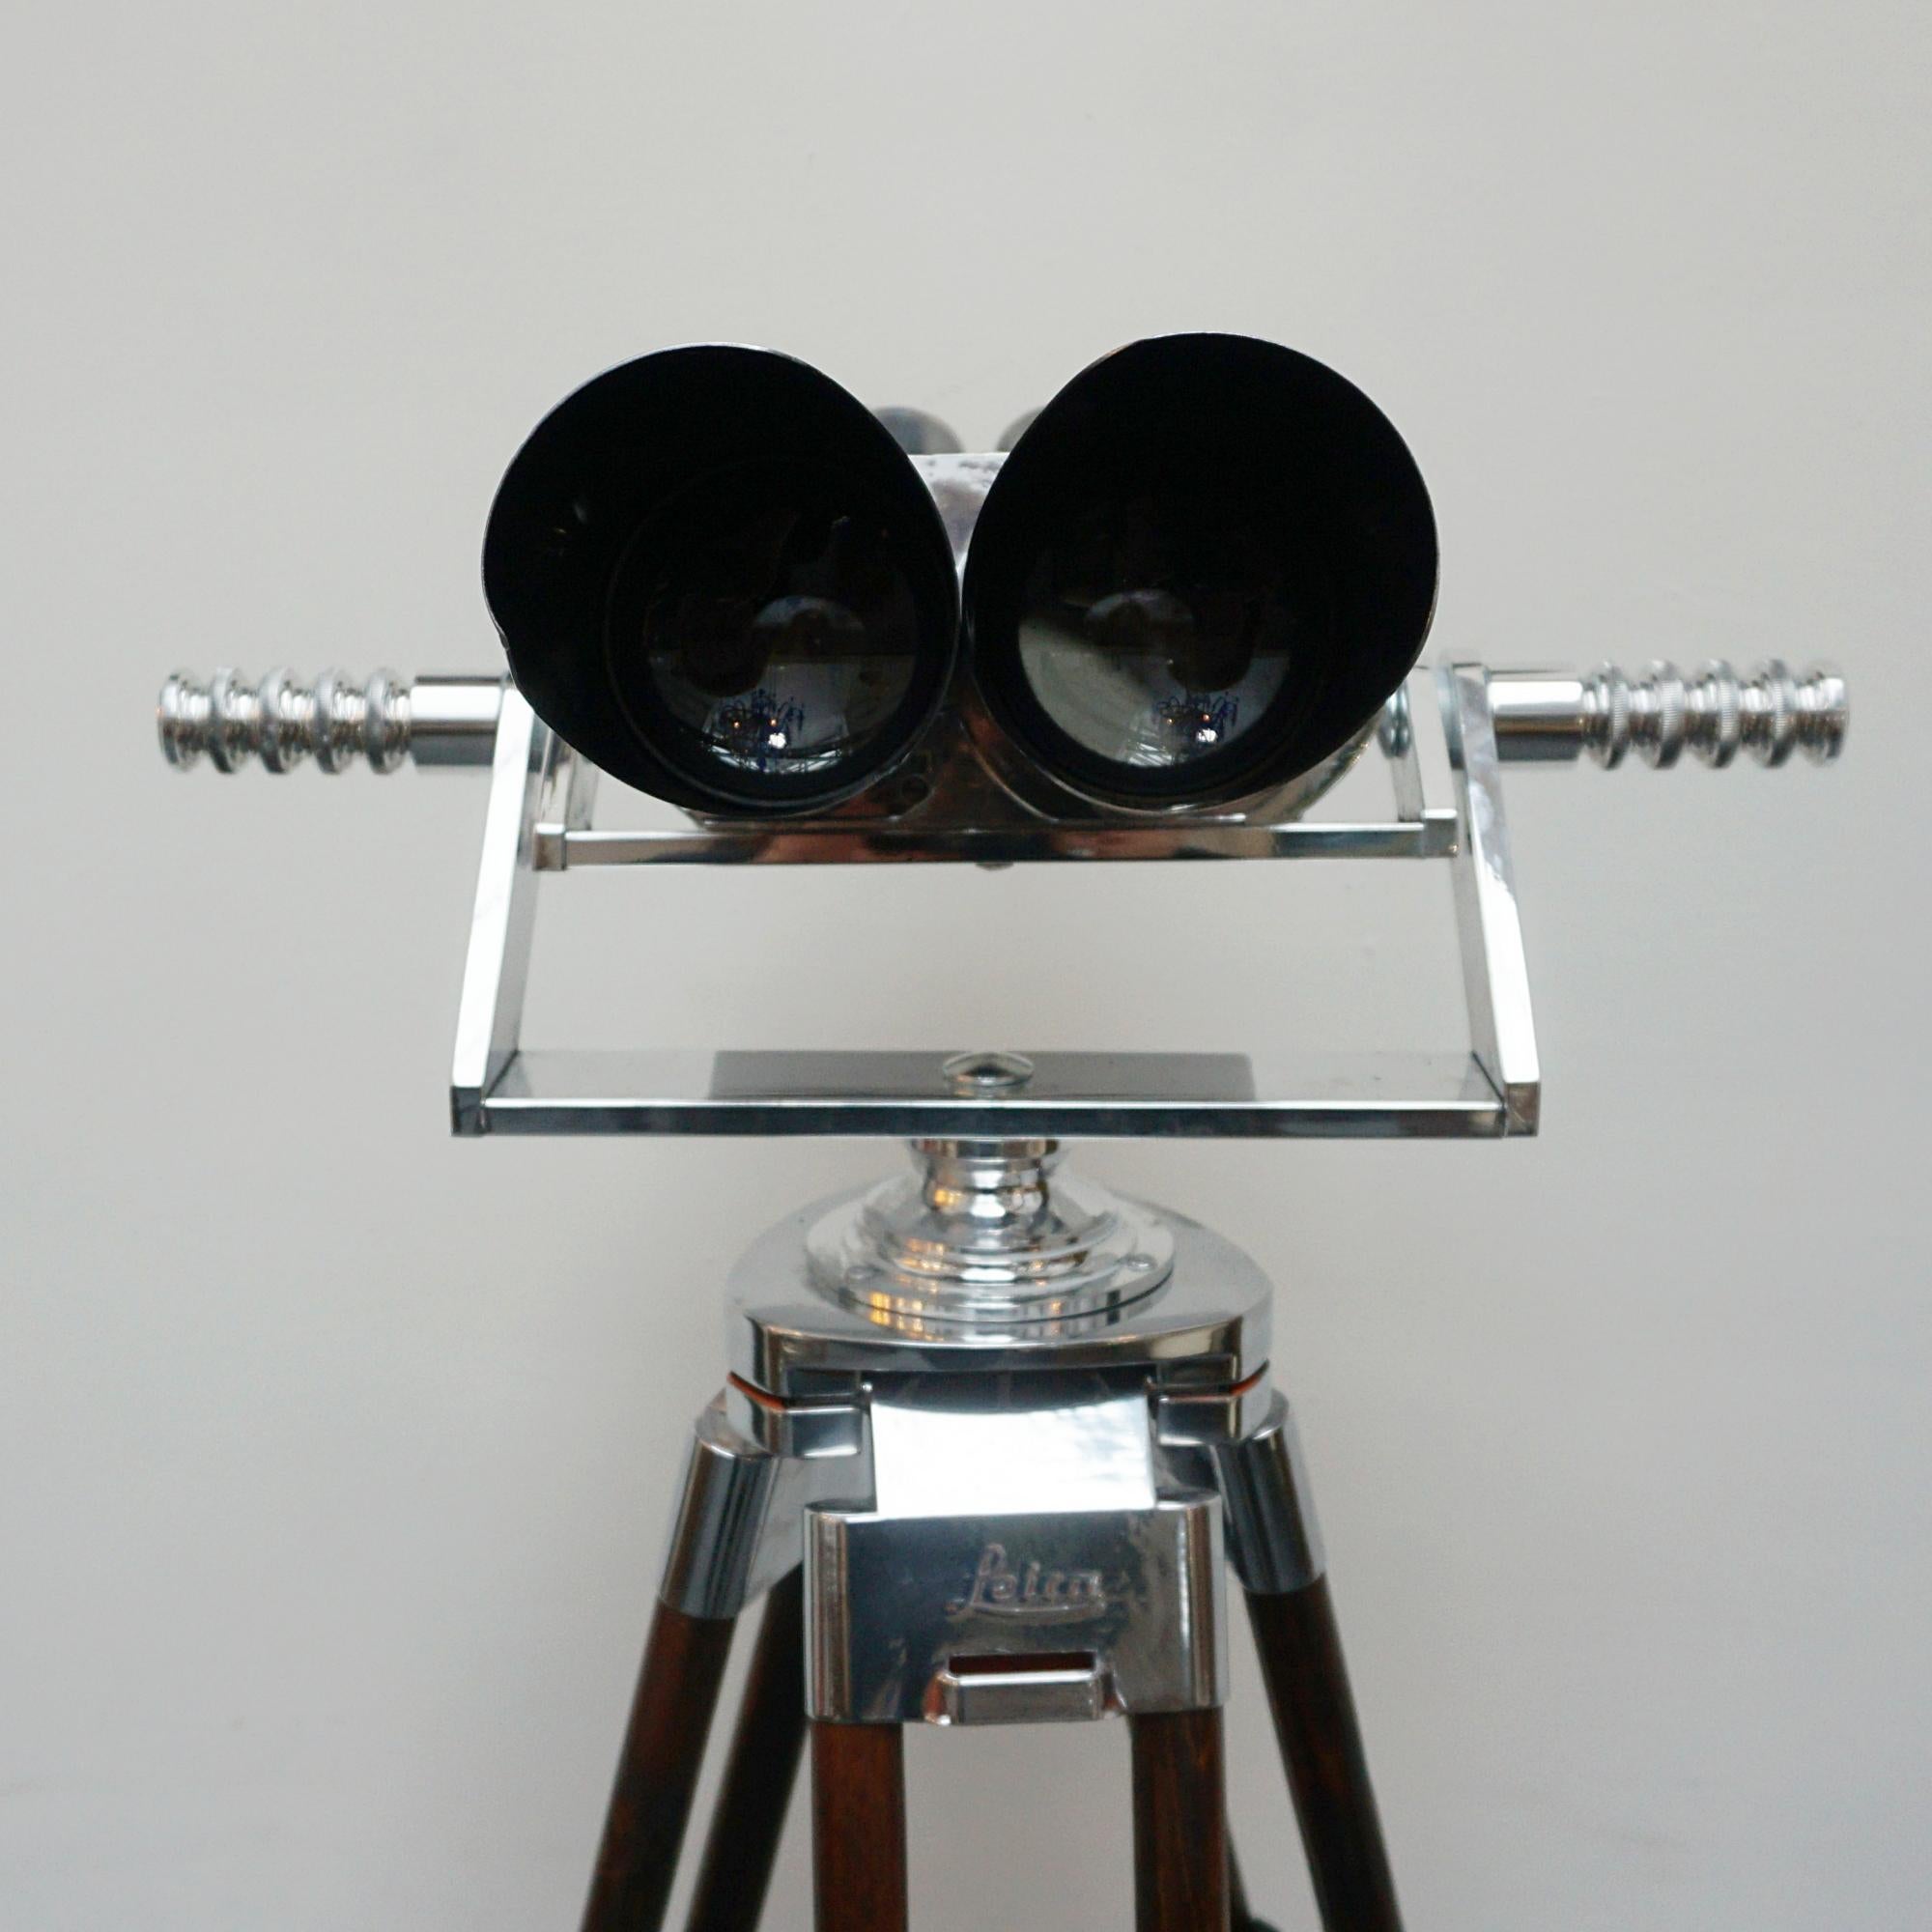 10 X 80 WW11 Naval/Marine Binoculars by Zeiss 8